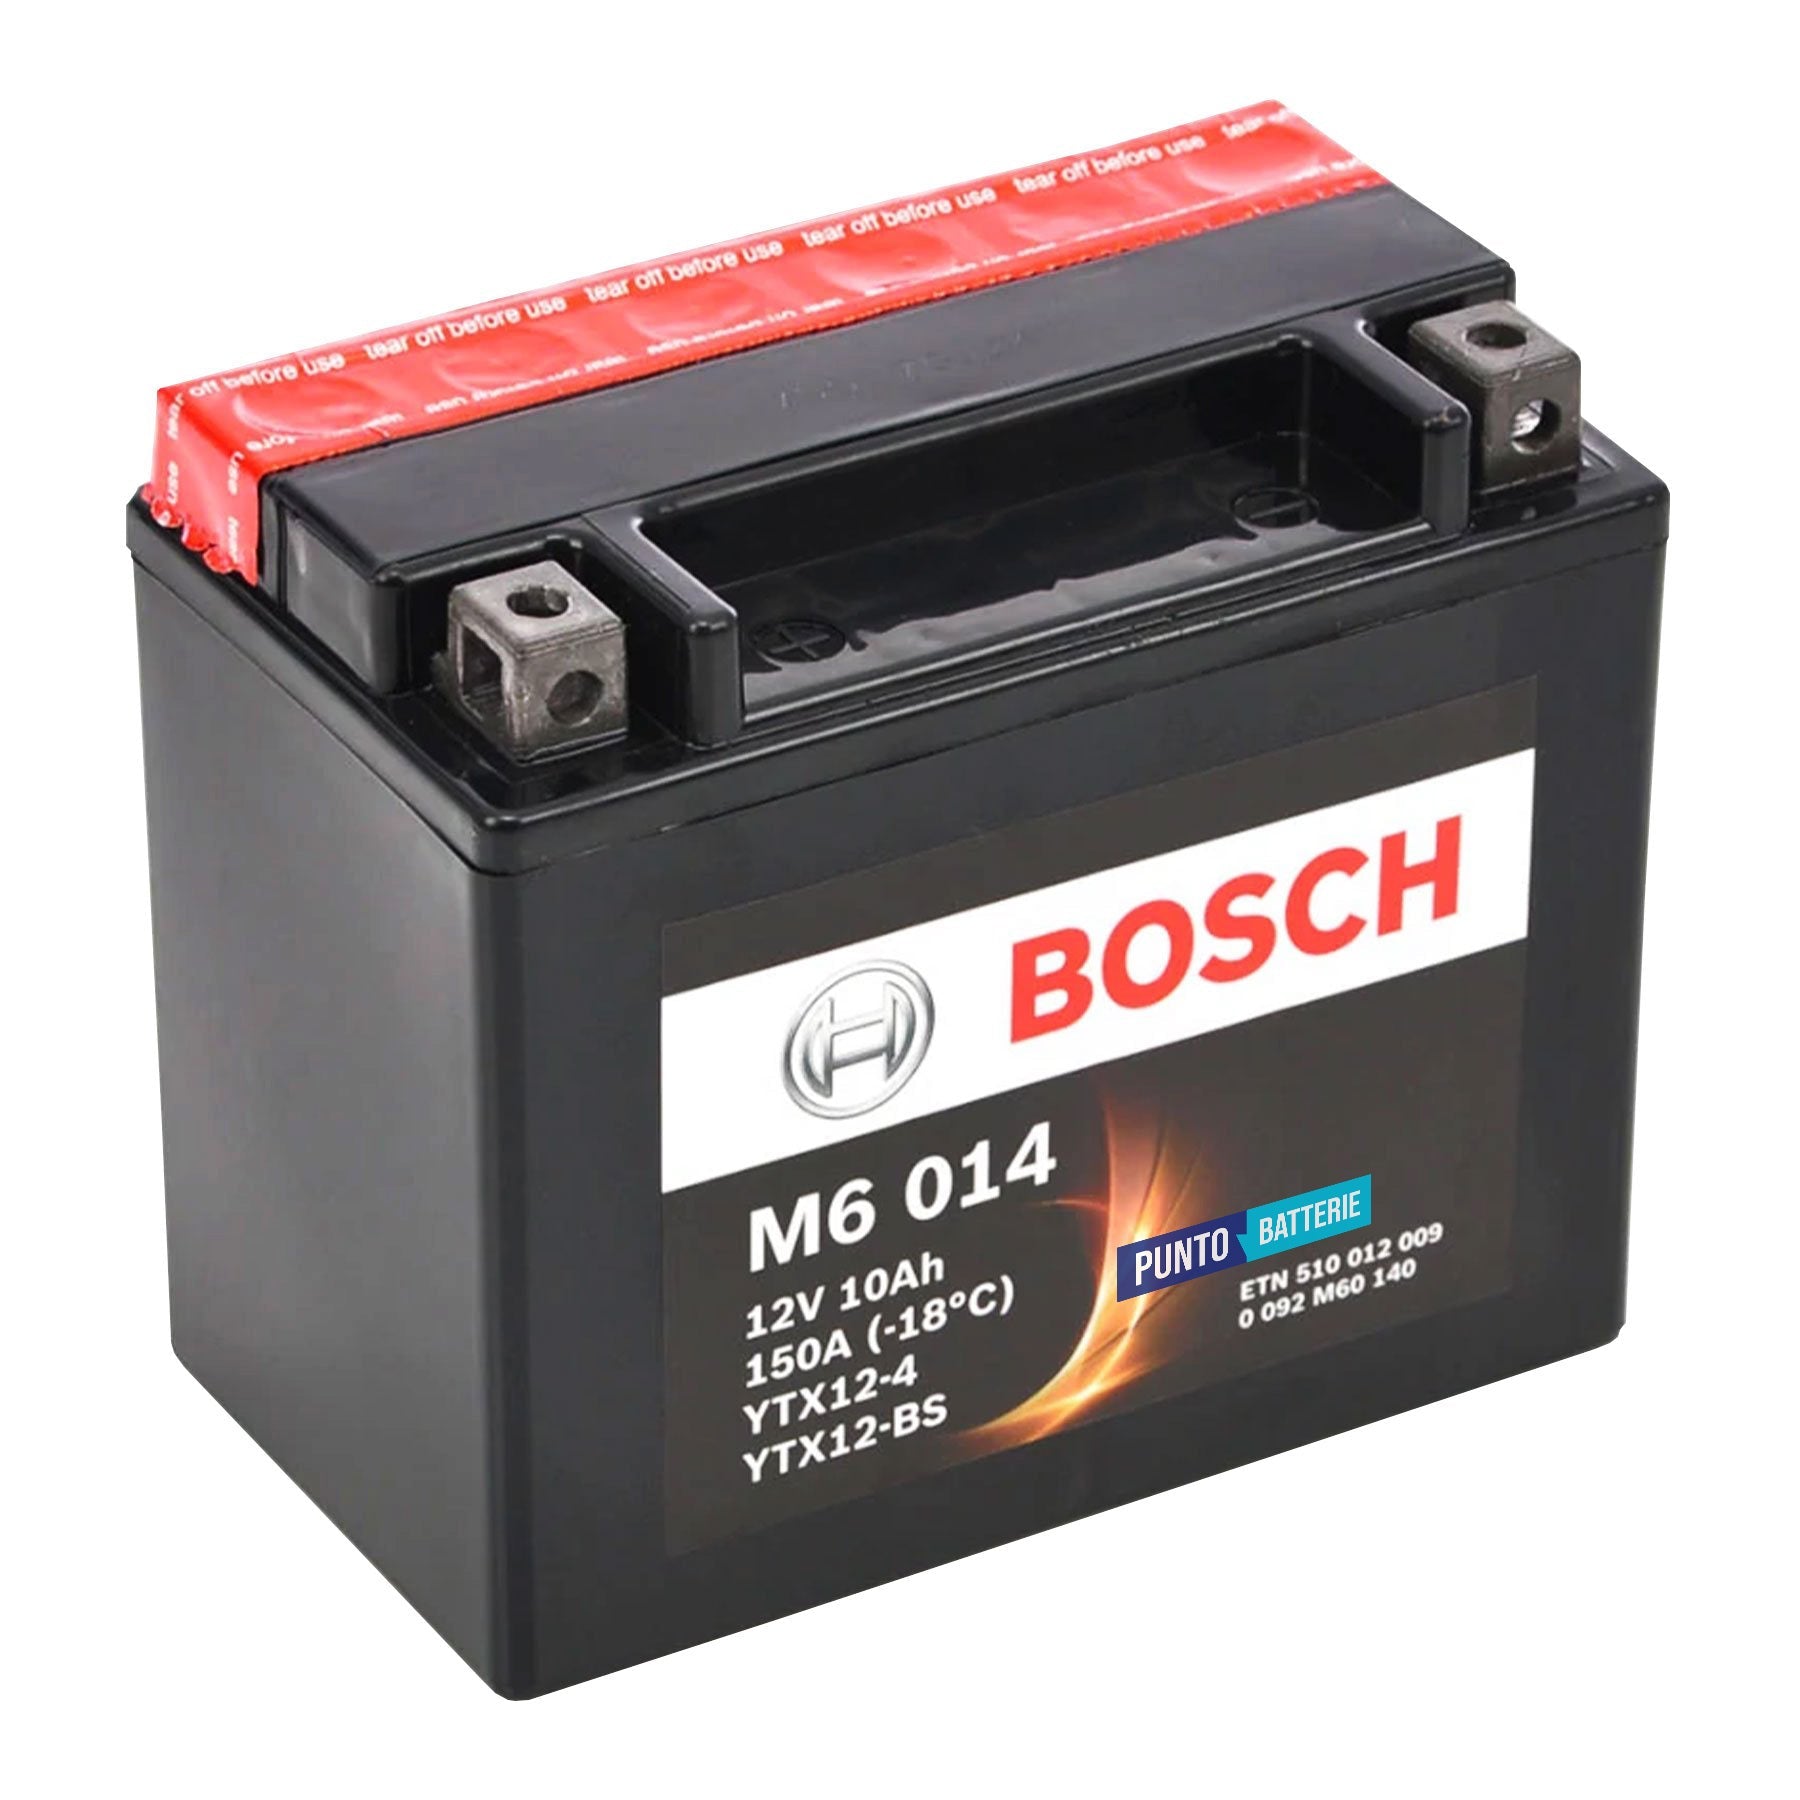 Batteria originale Bosch M6 M6014, dimensioni 150 x 87 x 105, polo positivo a sinistra, 12 volt, 10 amperora, 150 ampere. Batteria per moto, scooter e powersport.